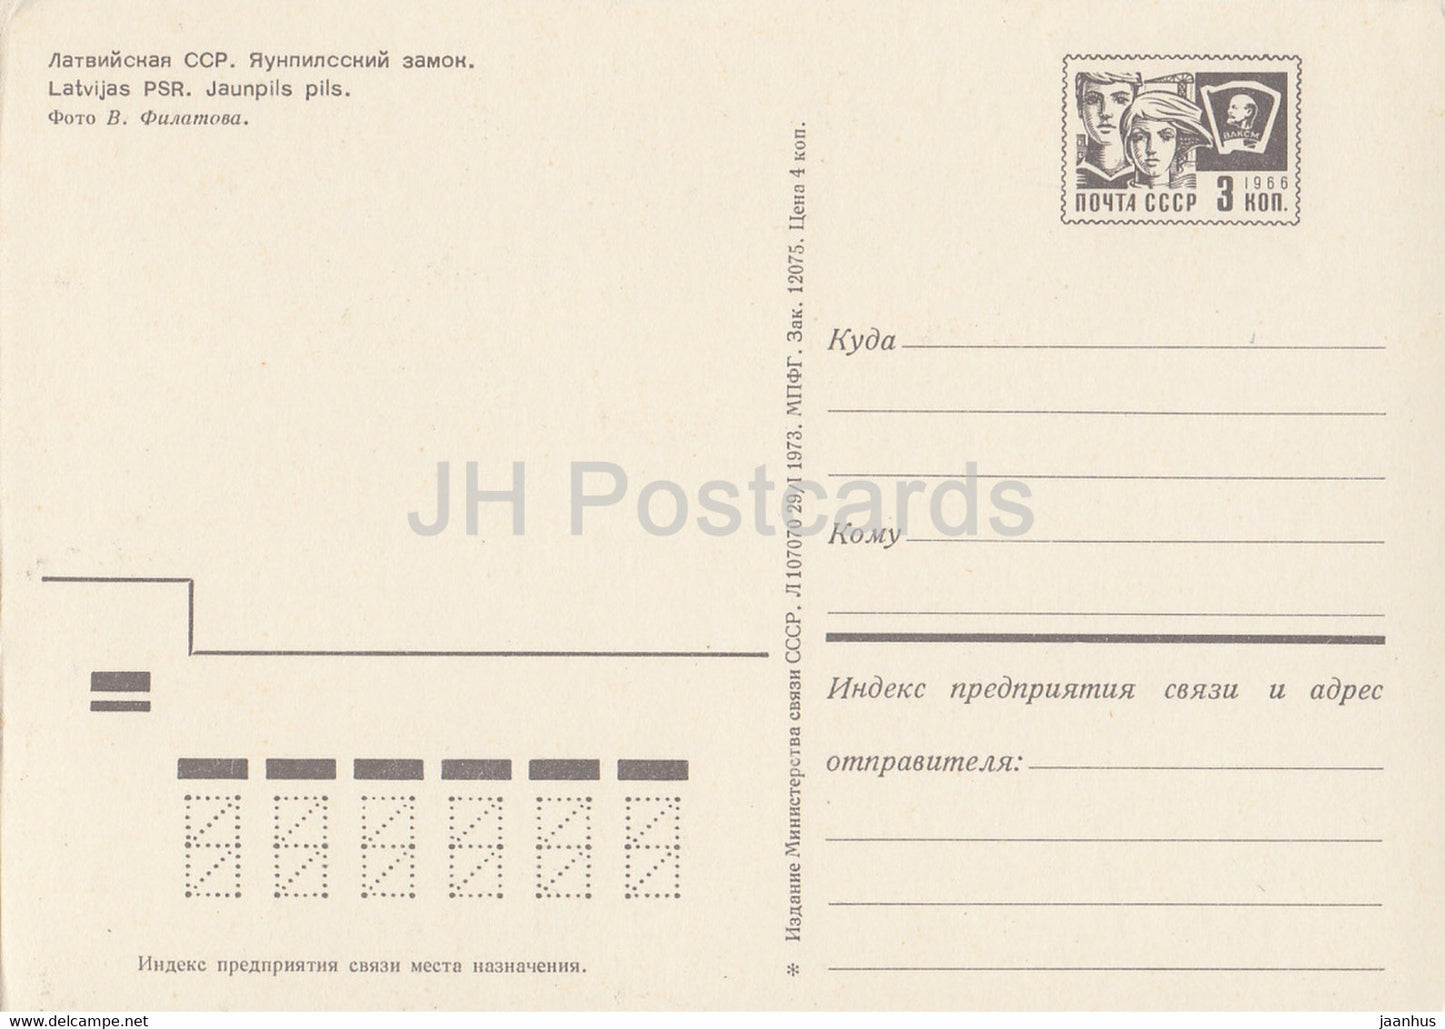 Château de Jaunpils - entier postal - 1973 - Lettonie URSS - inutilisé